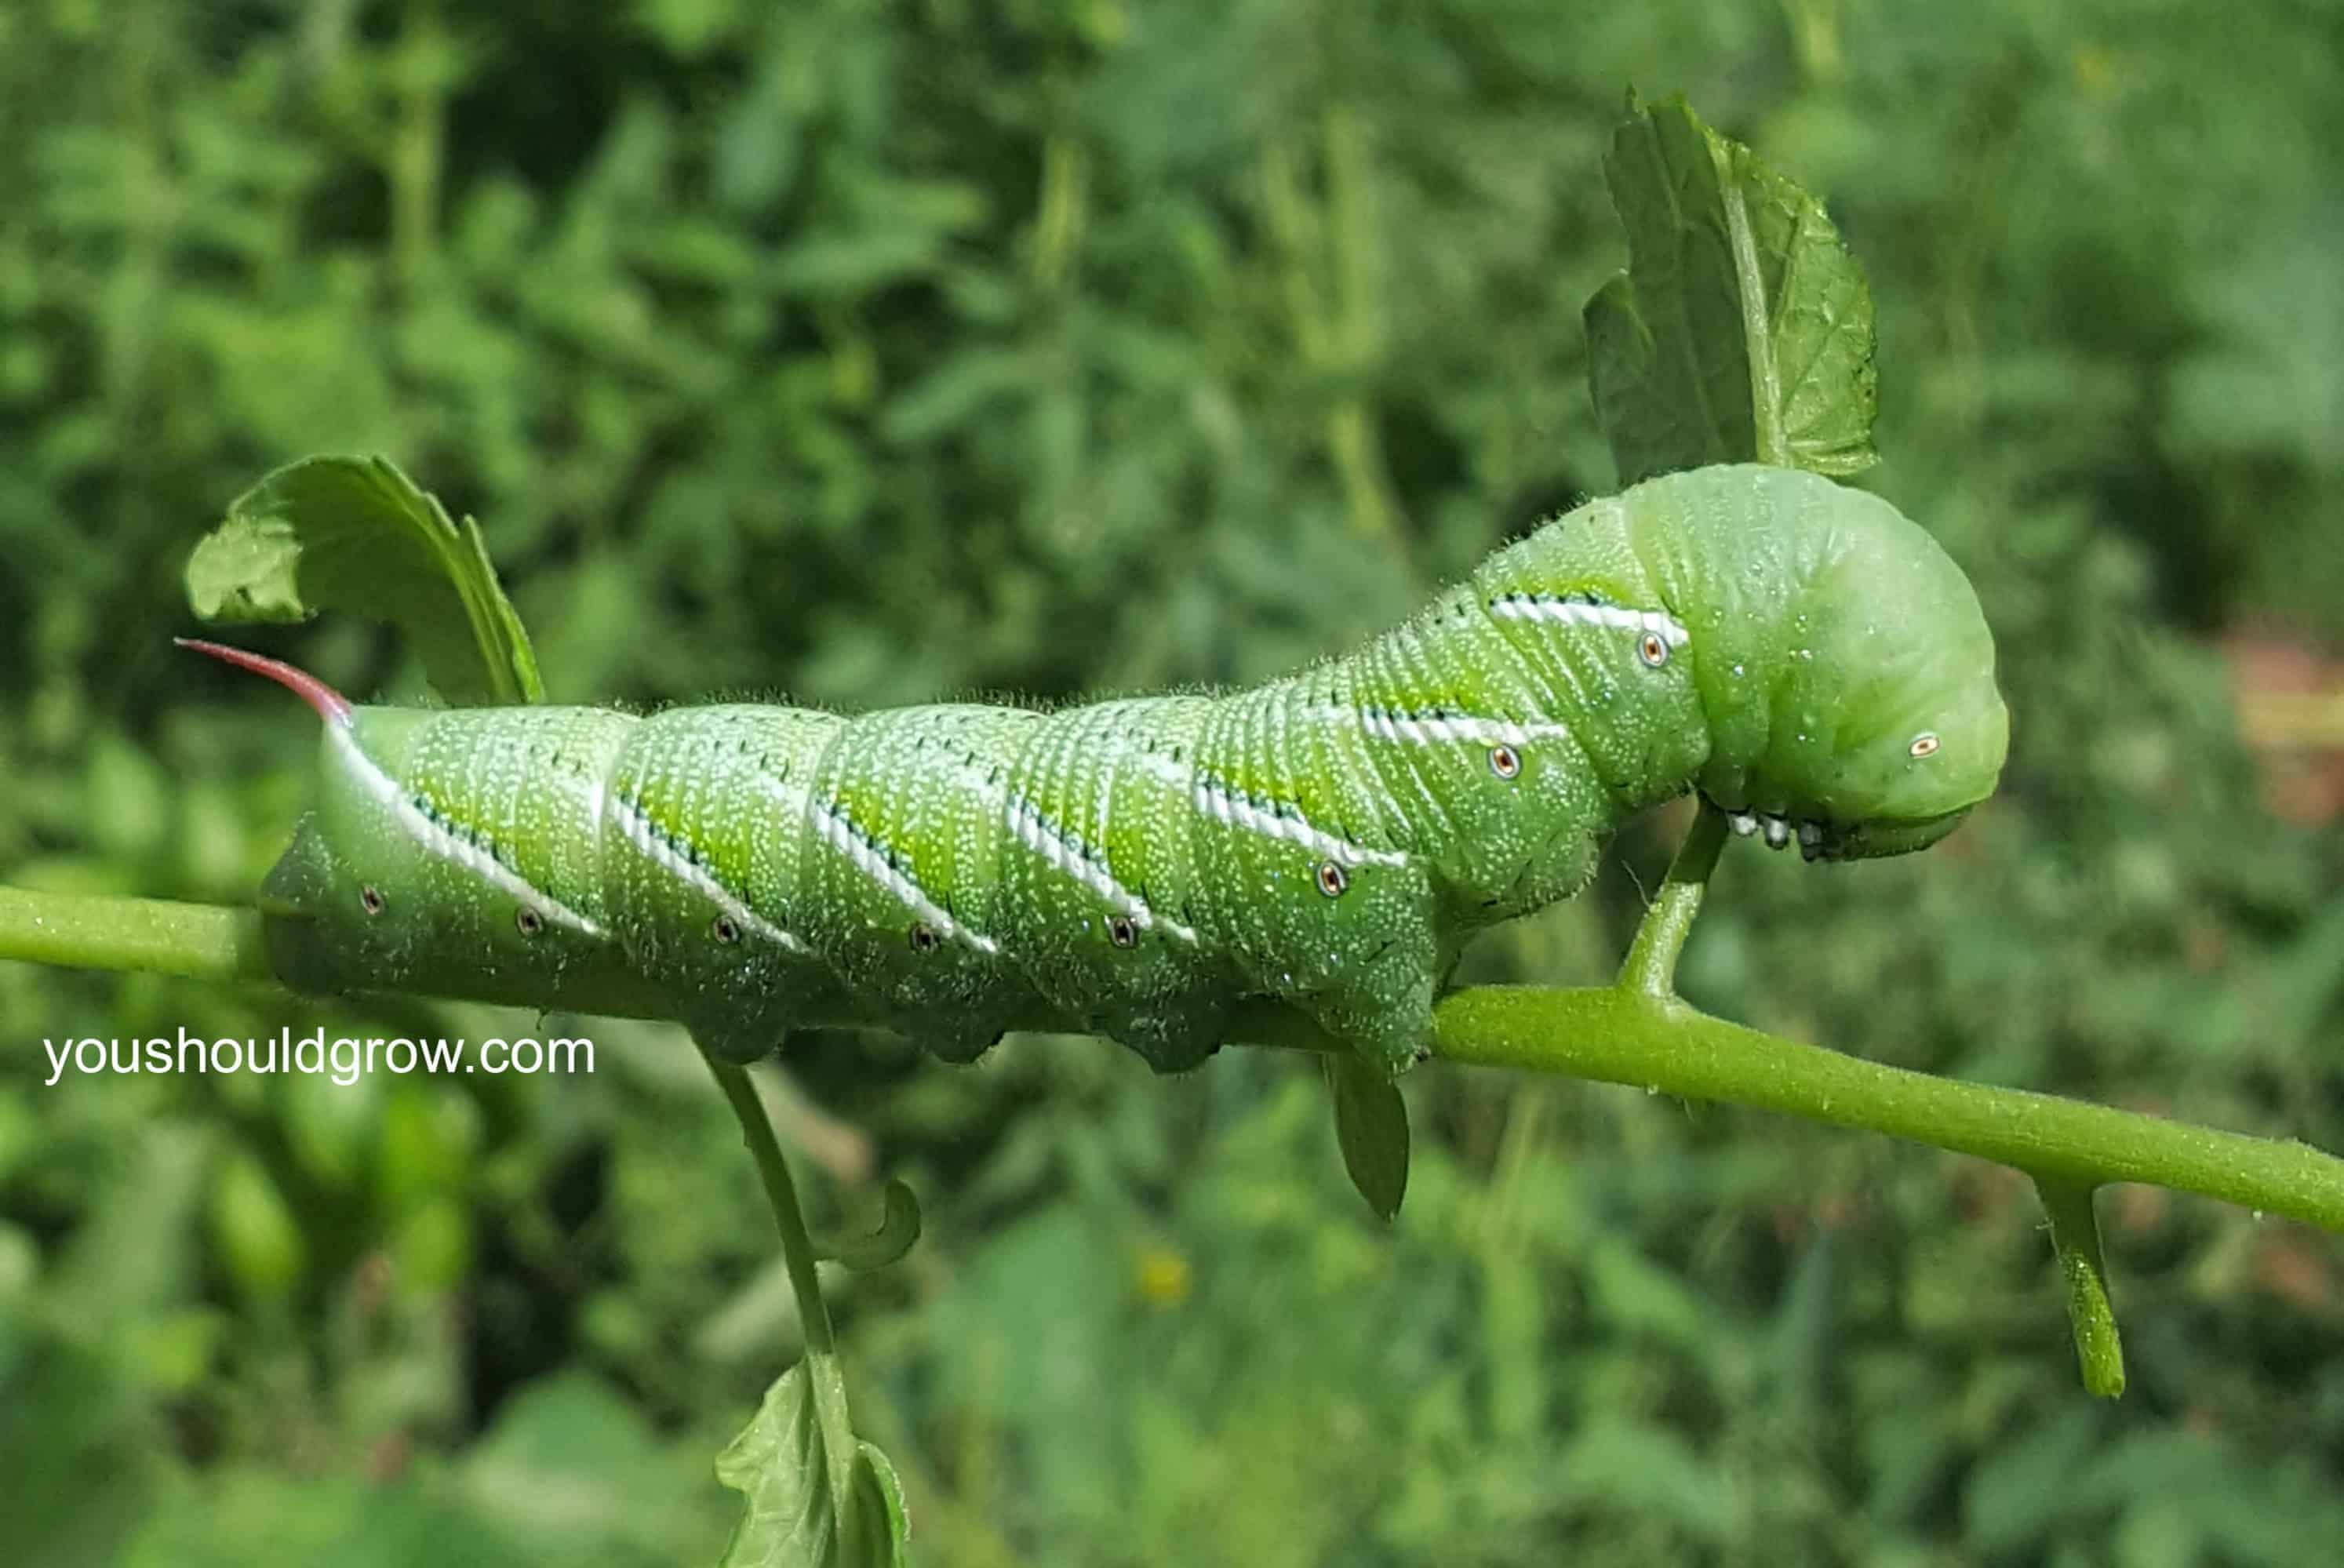 large hornworm on tomato plant